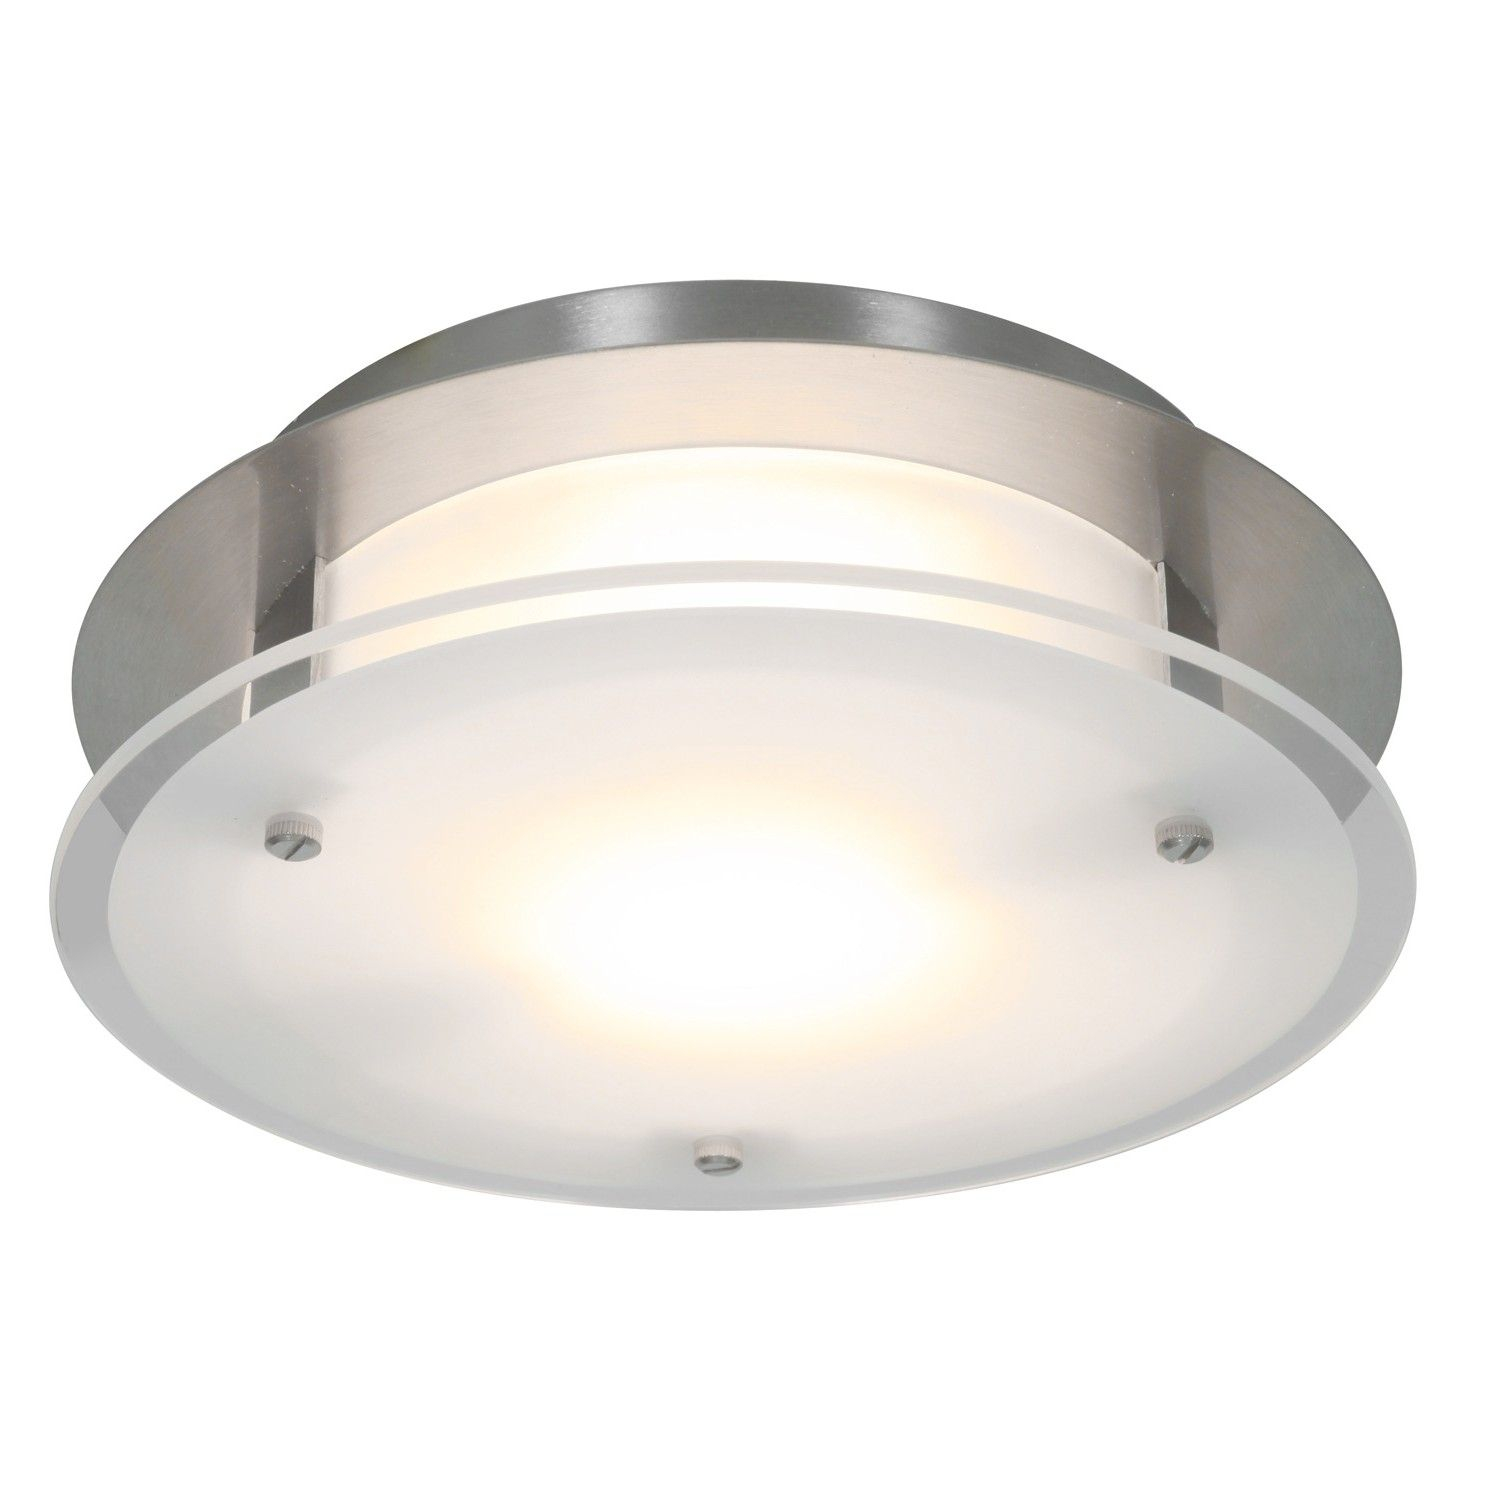 Luxury Ductless Bathroom Fan With Light Bathroom Fan Light within size 1500 X 1500